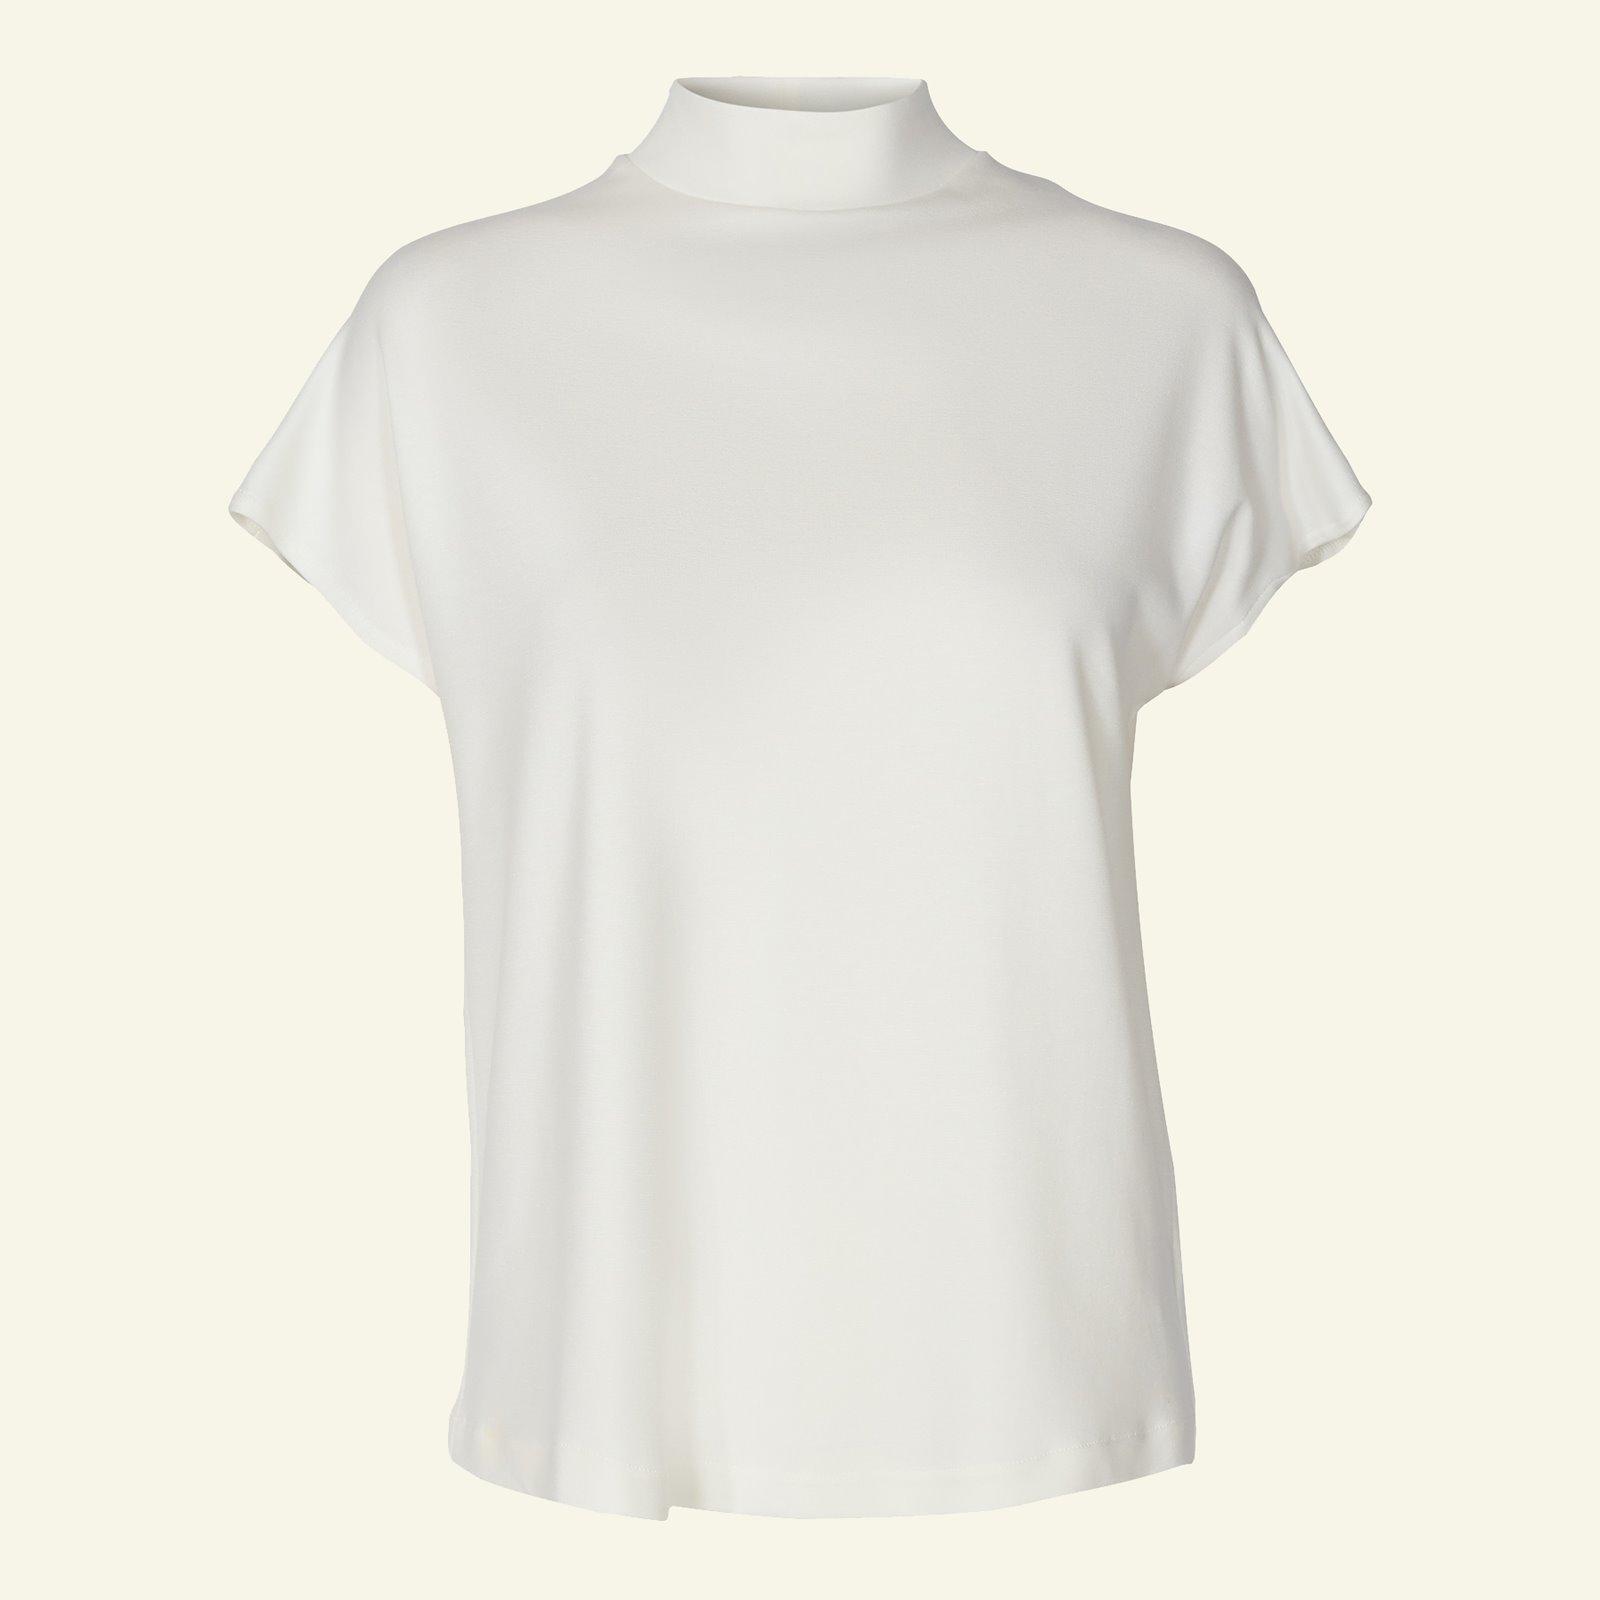 T-shirt und Kleid mit hohem Kragen p22069_270412_sskit